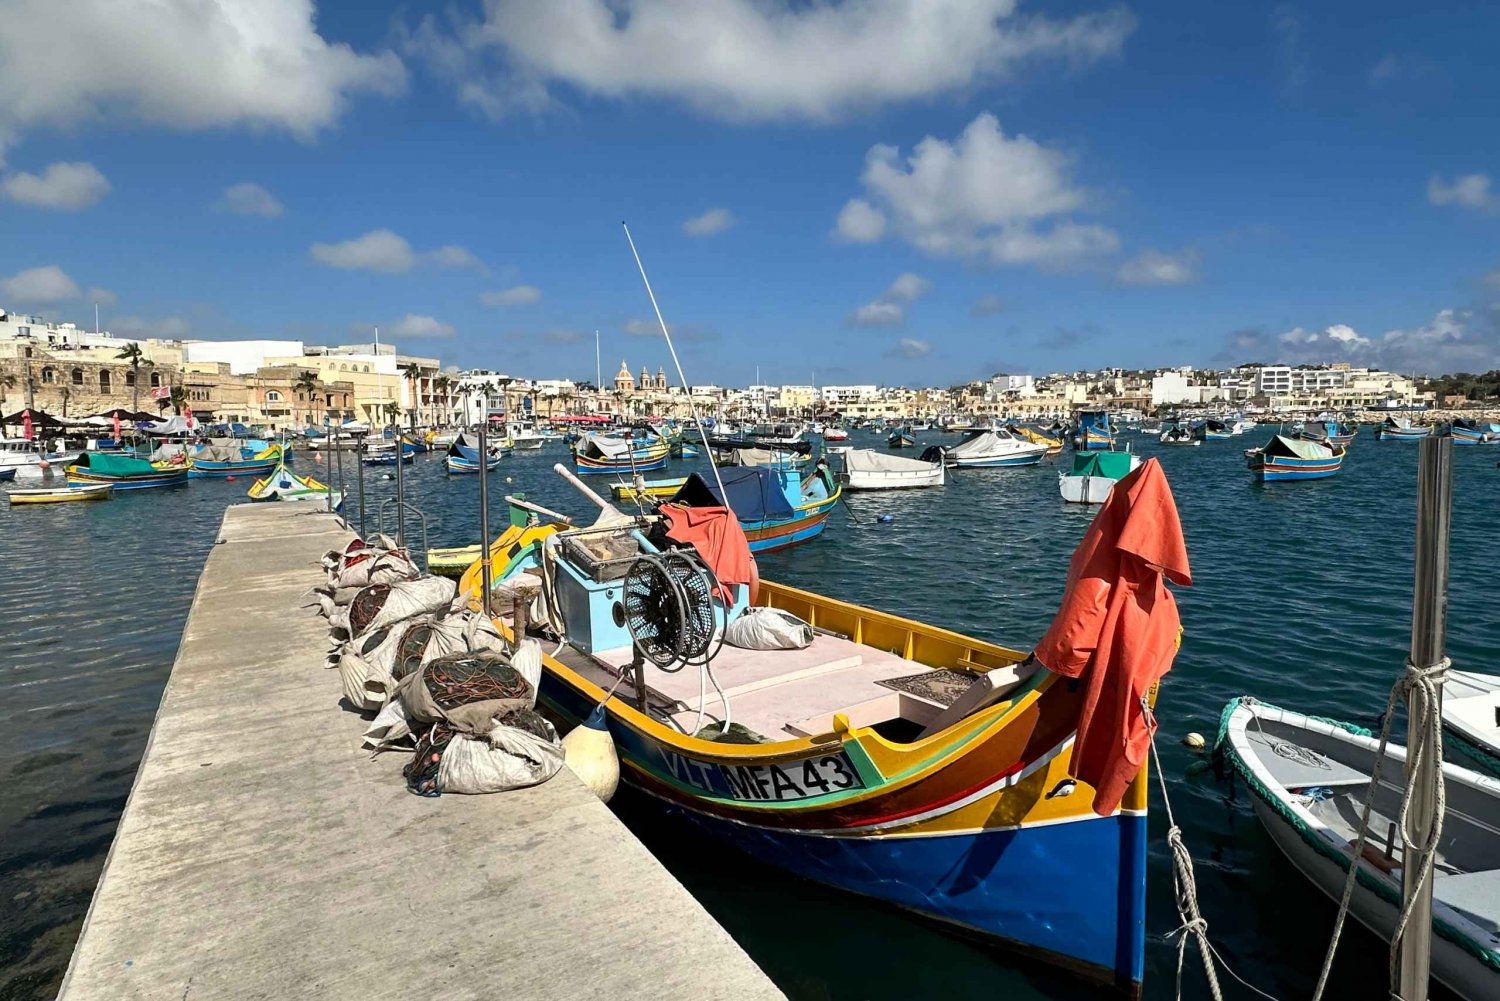 Maltas høydepunkter: Antikke underverk, byer og kystens sjarm